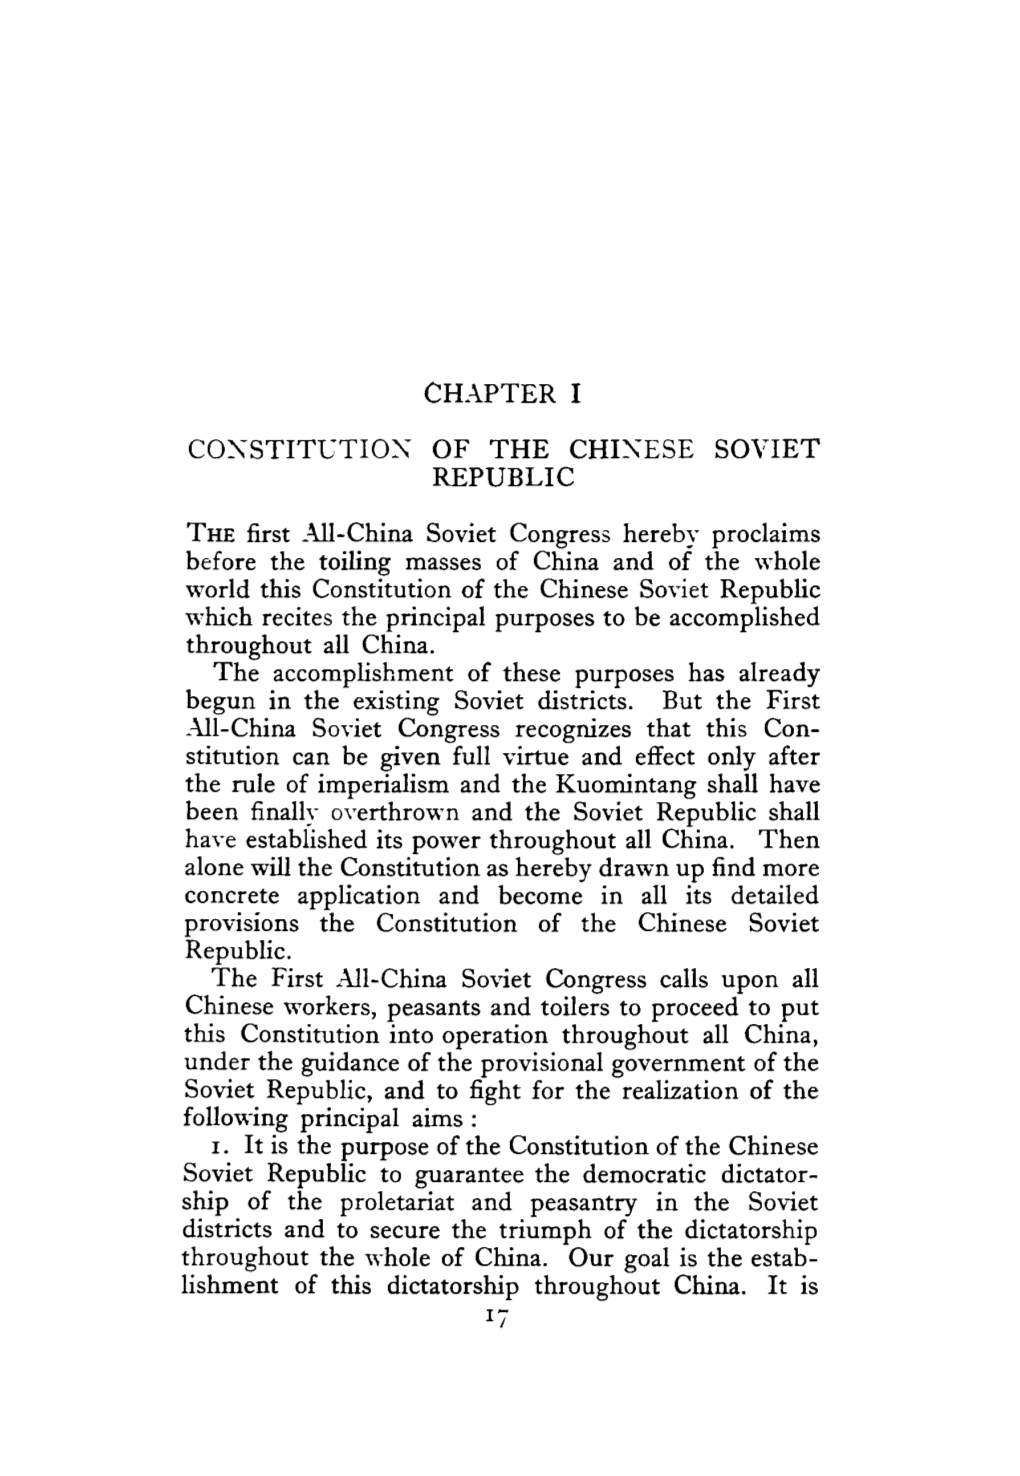 Chinese Soviet Republic Constitutution 1931